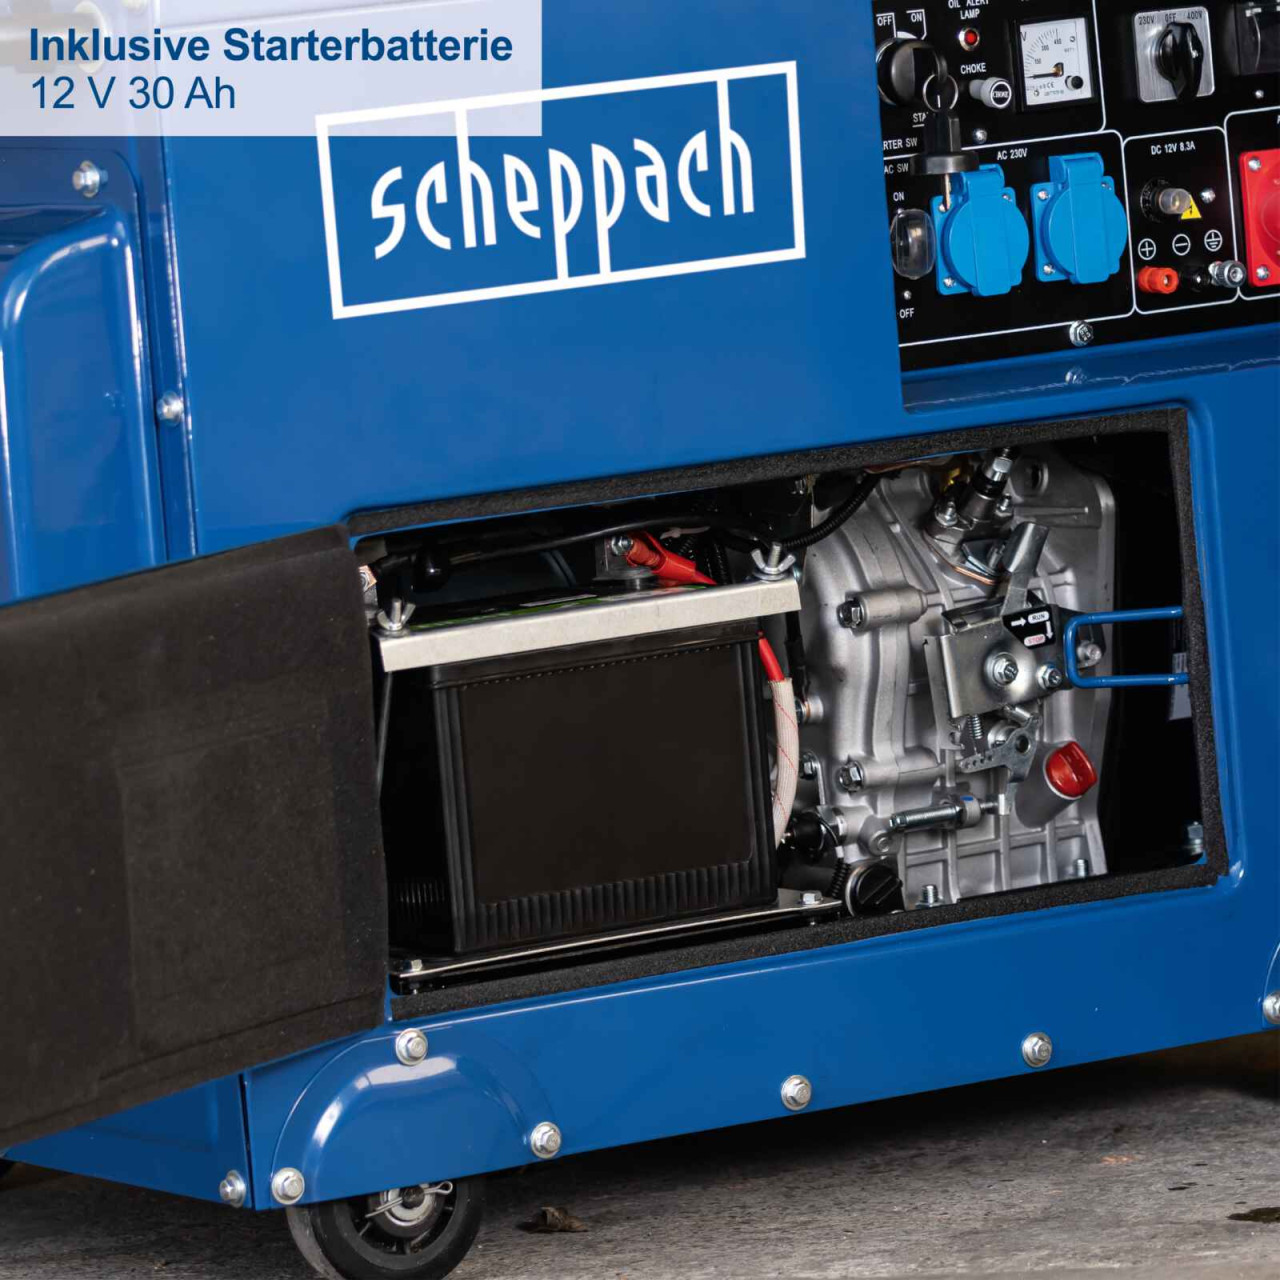 Scheppach agregat za struju SG5200D 5kW